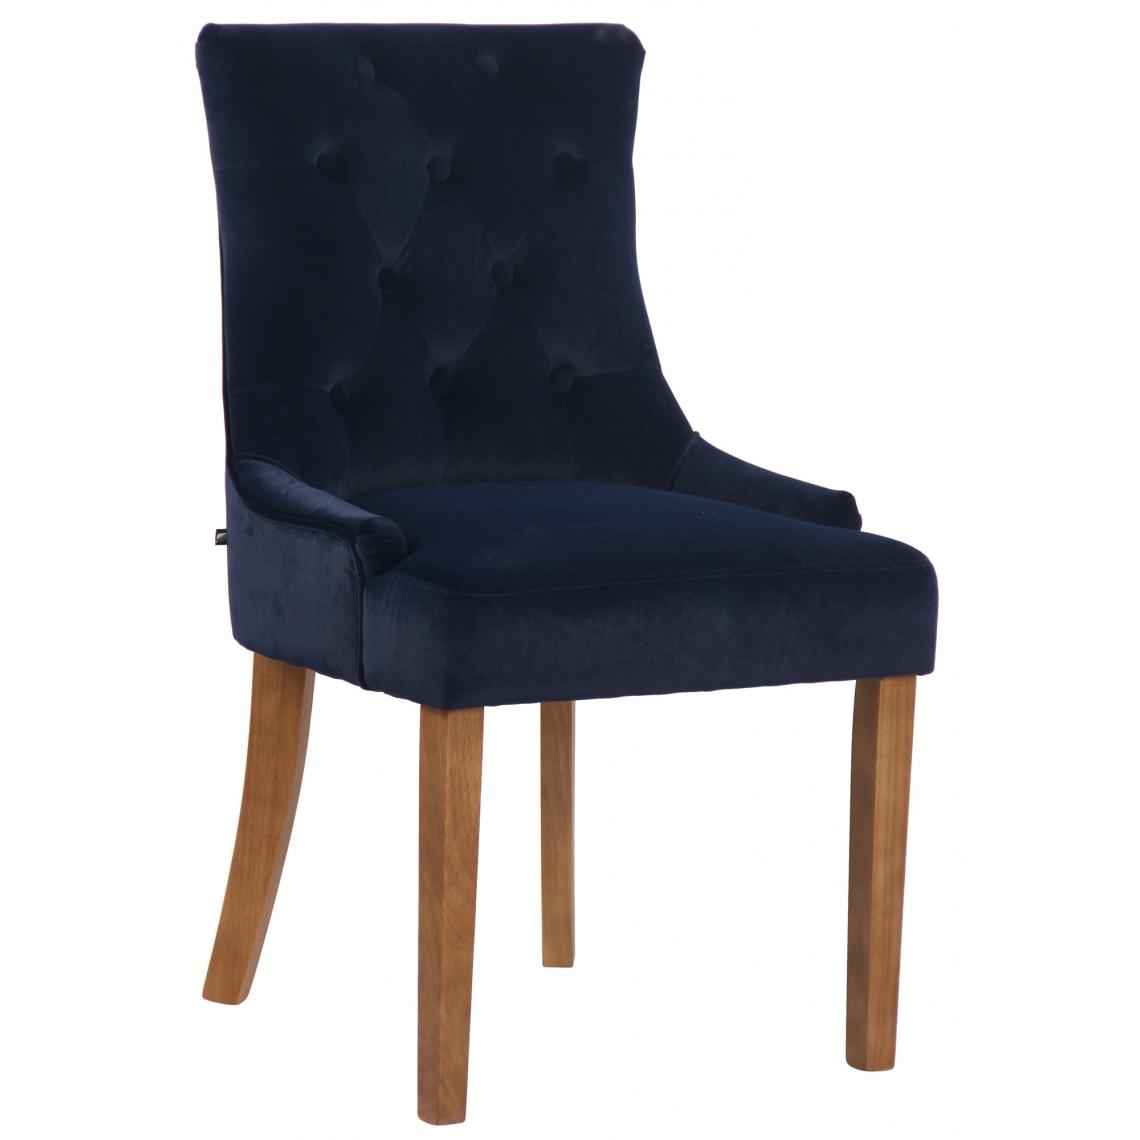 Icaverne - Chic Chaise de salle à manger categorie Avarua velours antique-light couleur bleu - Chaises